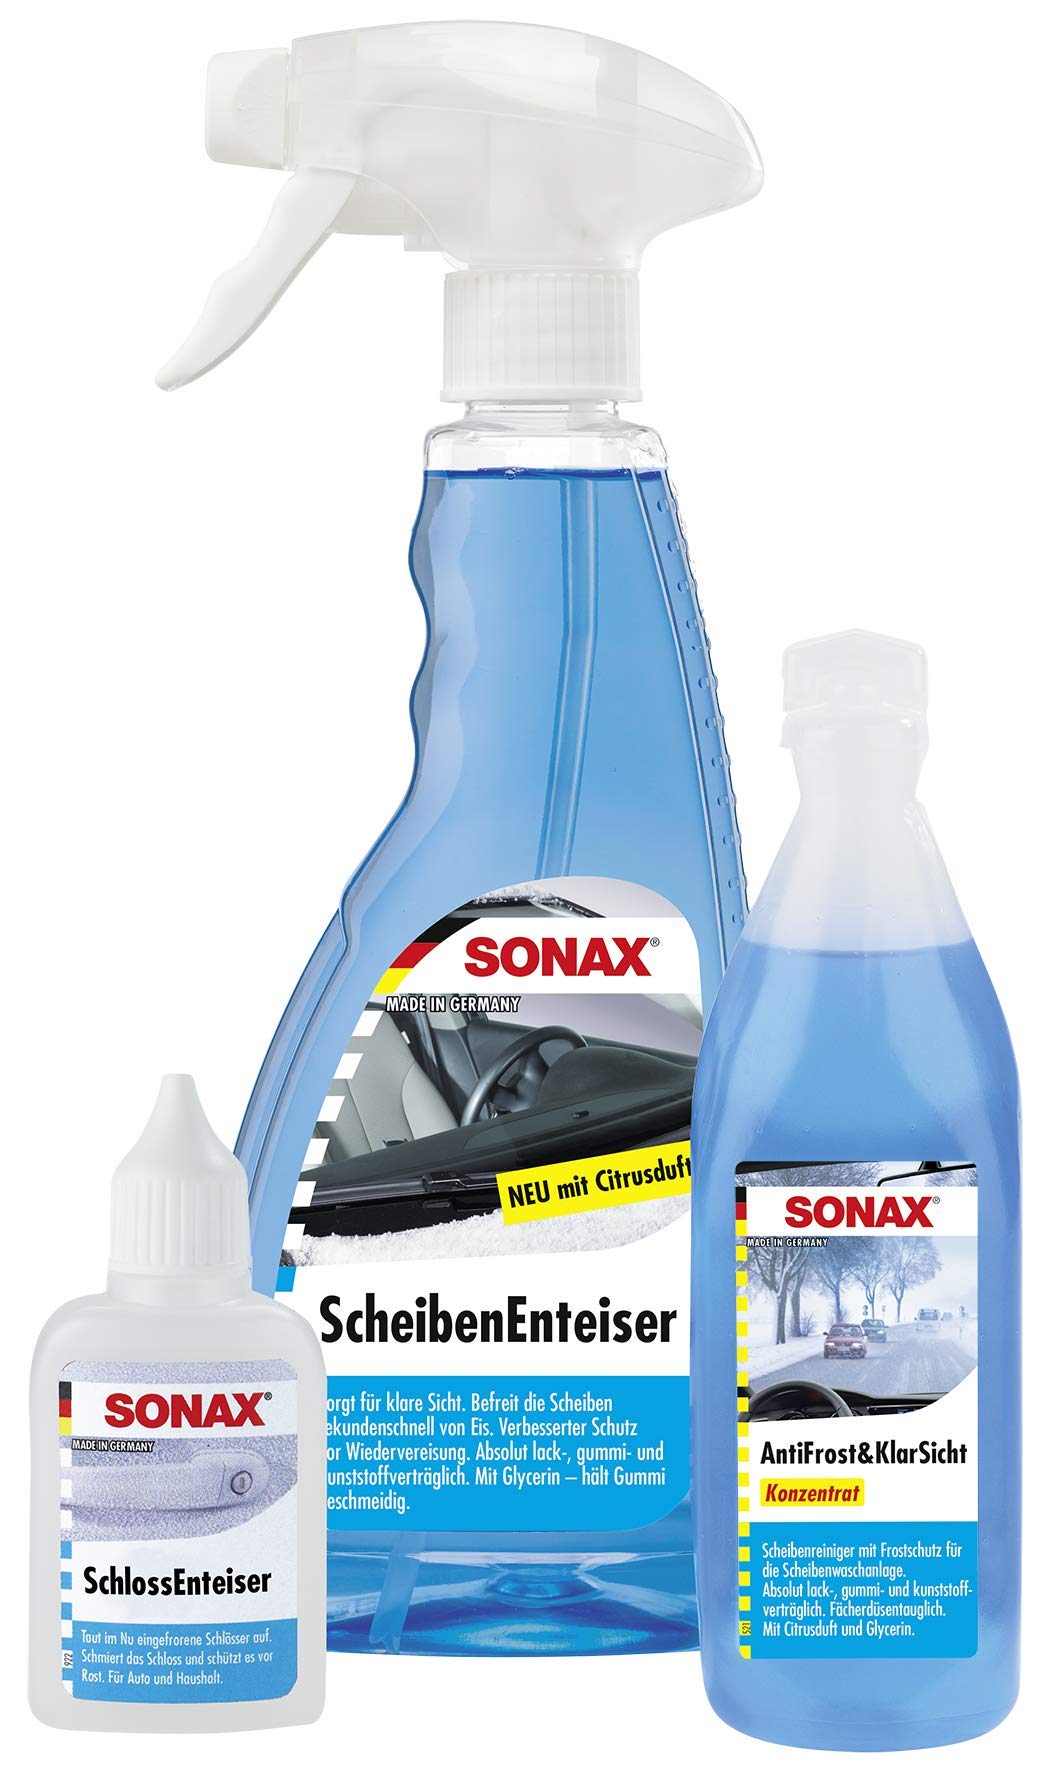 SONAX WinterFitSet (3-teilig) gegen Eis, Frost & schlechte Sicht, Scheibenenteiser (500 ml), Schlossenteiser (50 ml) & AntiFrost+KlarSicht Konzentrat (250 ml) | Art-Nr. 03319000 von SONAX